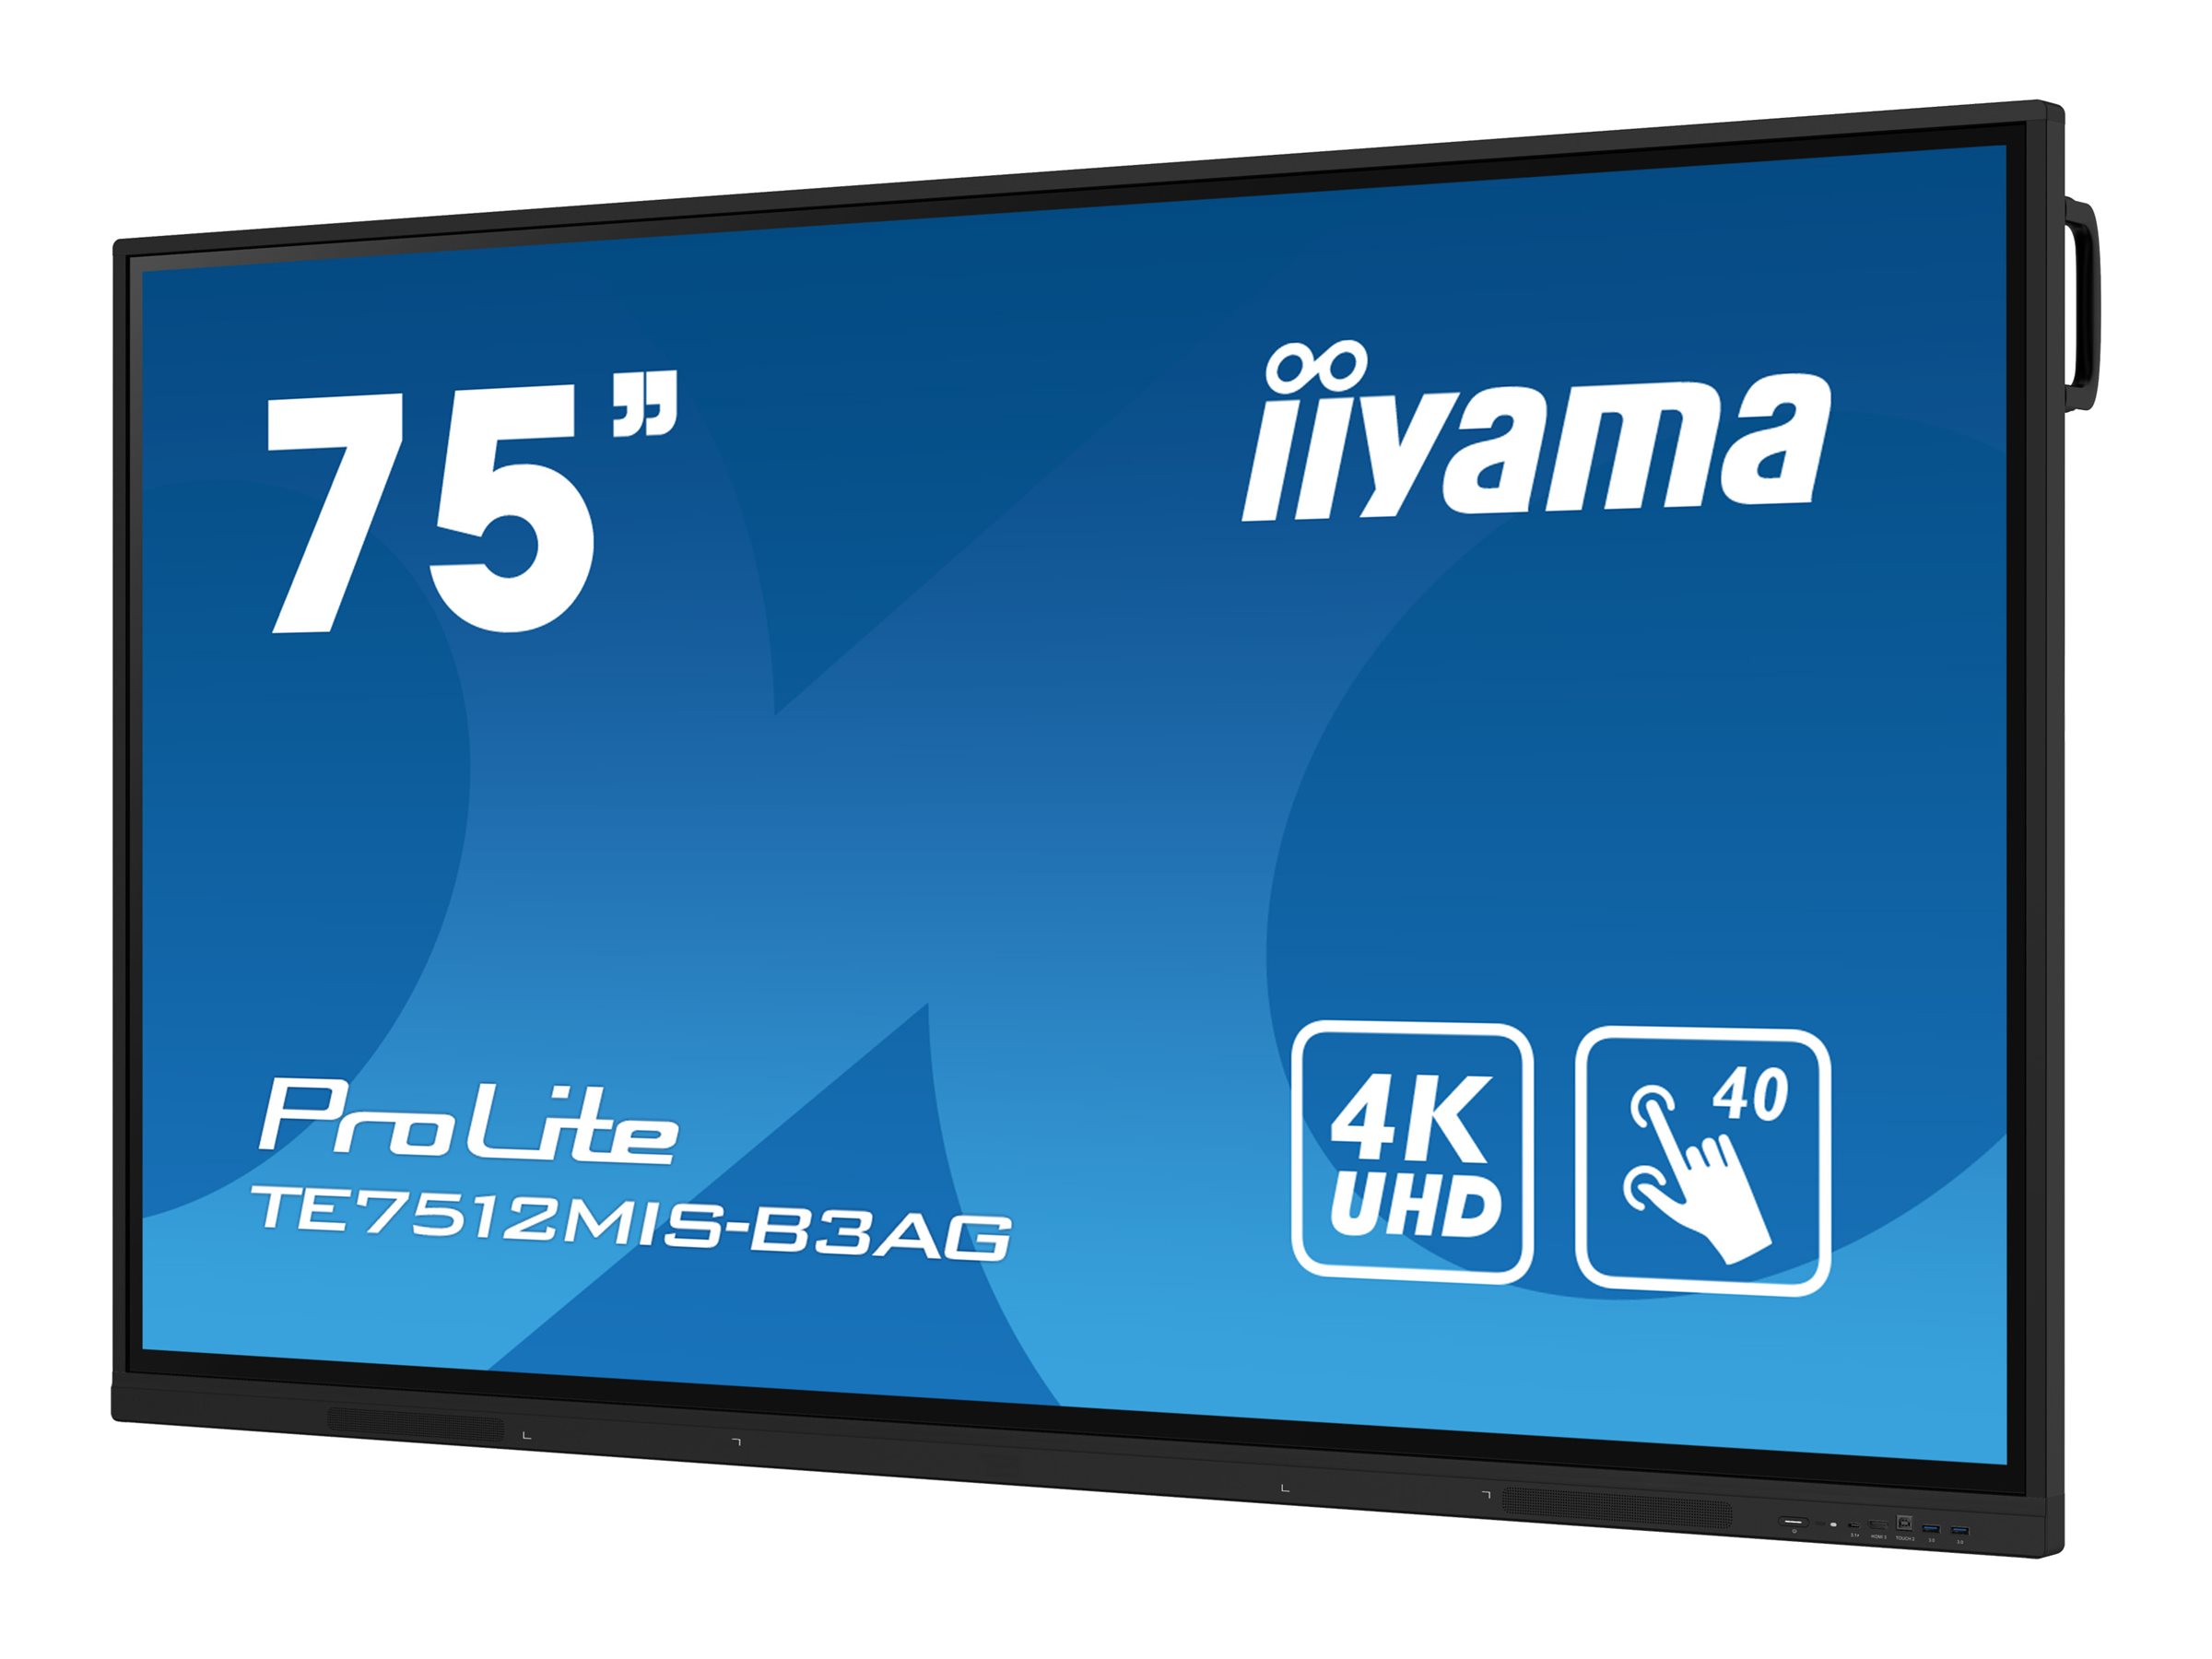 iiyama ProLite TE7512MIS-B3AG - Classe de diagonale 75" (74.5" visualisable) écran LCD rétro-éclairé par LED - signalétique numérique interactive - avec écran tactile (multi-touch) / capacité PC en option (slot-in) - 4K UHD (2160p) 3840 x 2160 - cadre noir avec finition mate - avec Module WiFi iiyama (OWM002) - TE7512MIS-B3AG - Écrans de signalisation numérique